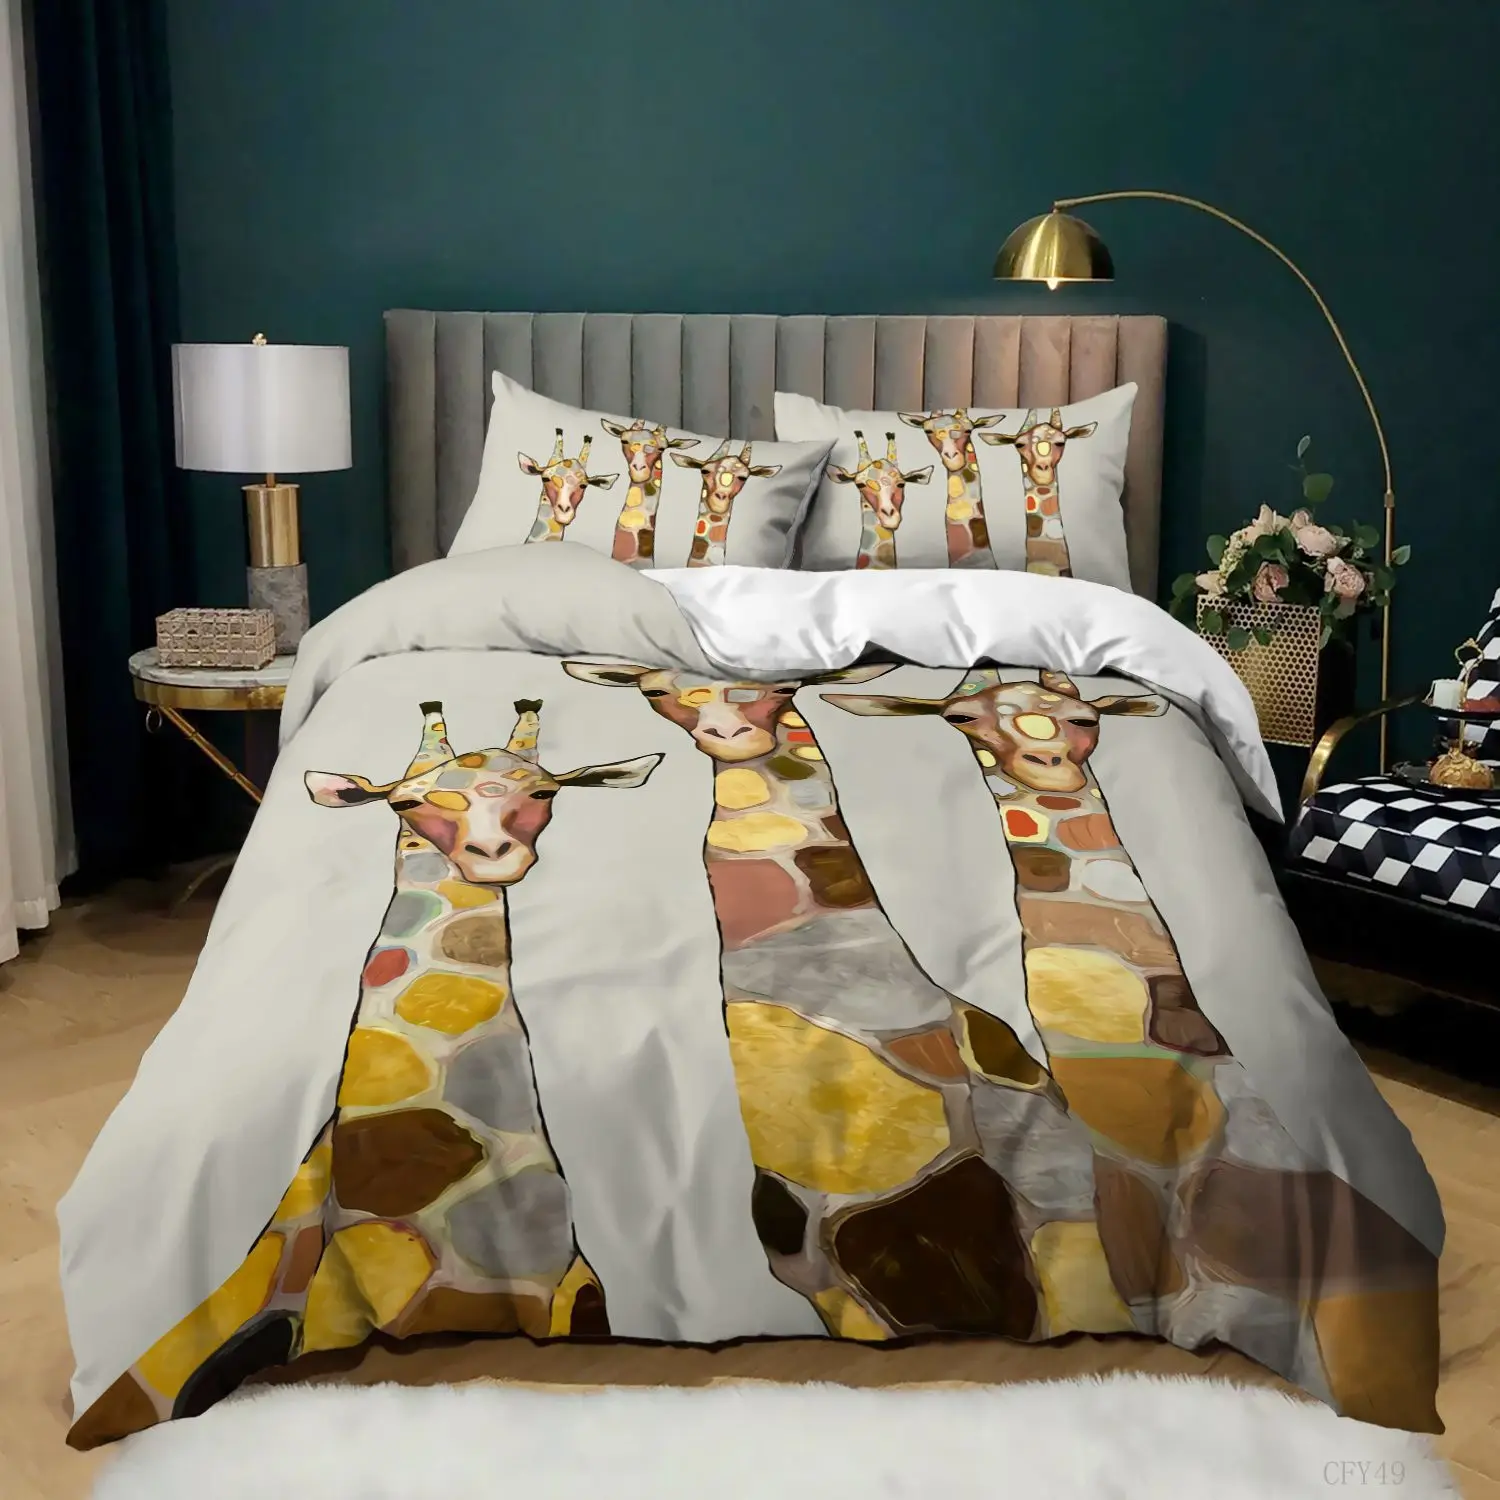 

Комплект постельного белья с изображением цветного жирафа, одеяло, покрывало розового и белого цвета, постельное белье с изображением жира...